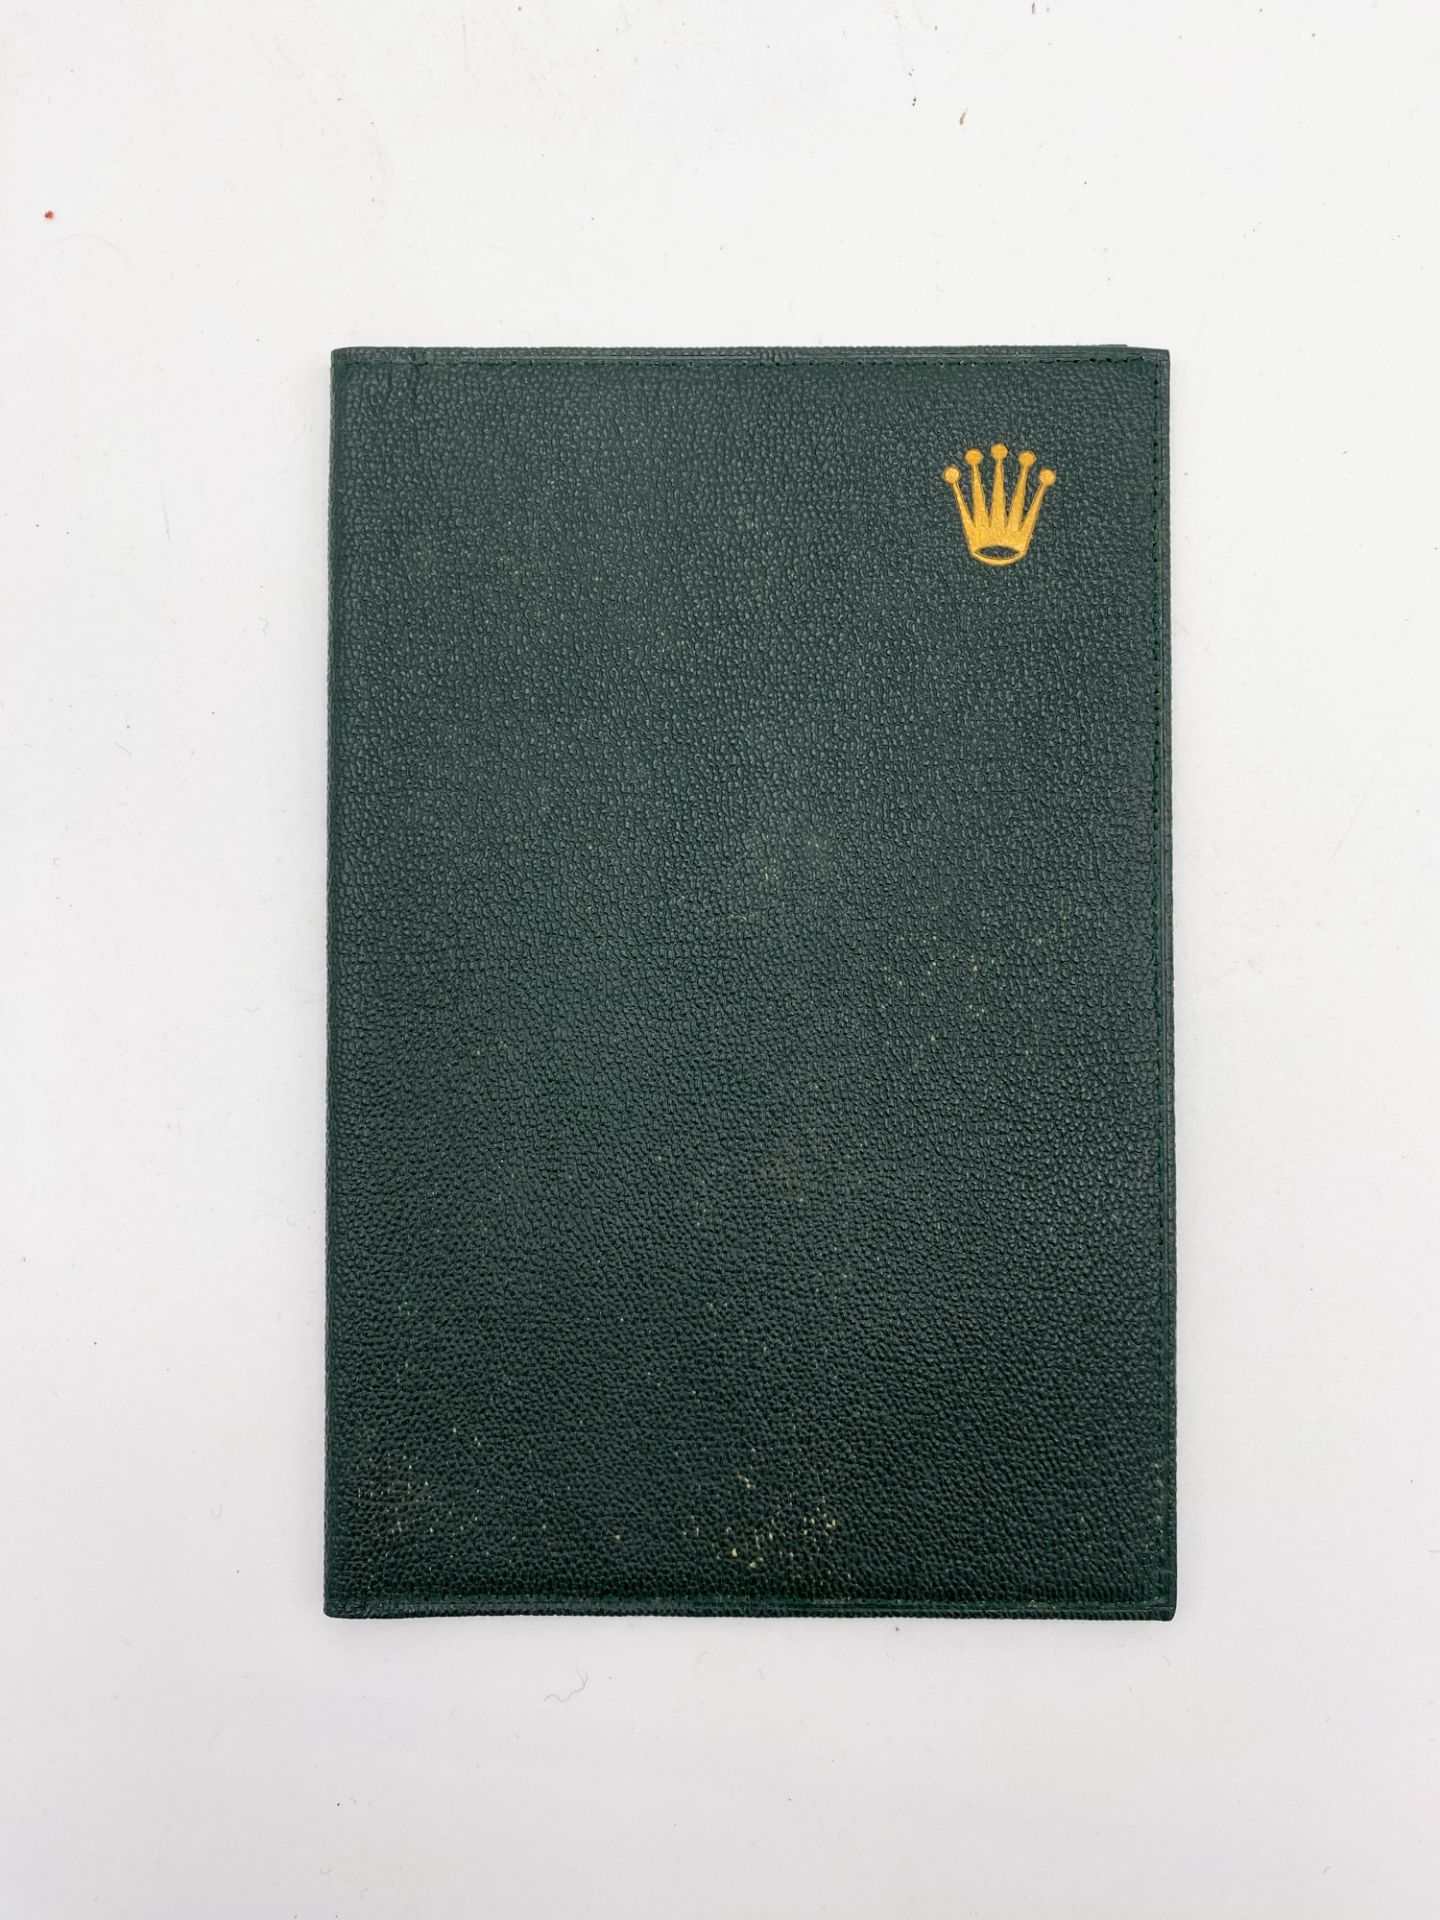 ROLEX Maroquinerie - Pochette en maroquin vert émeraude - insigne en haut à droite - ca 1960